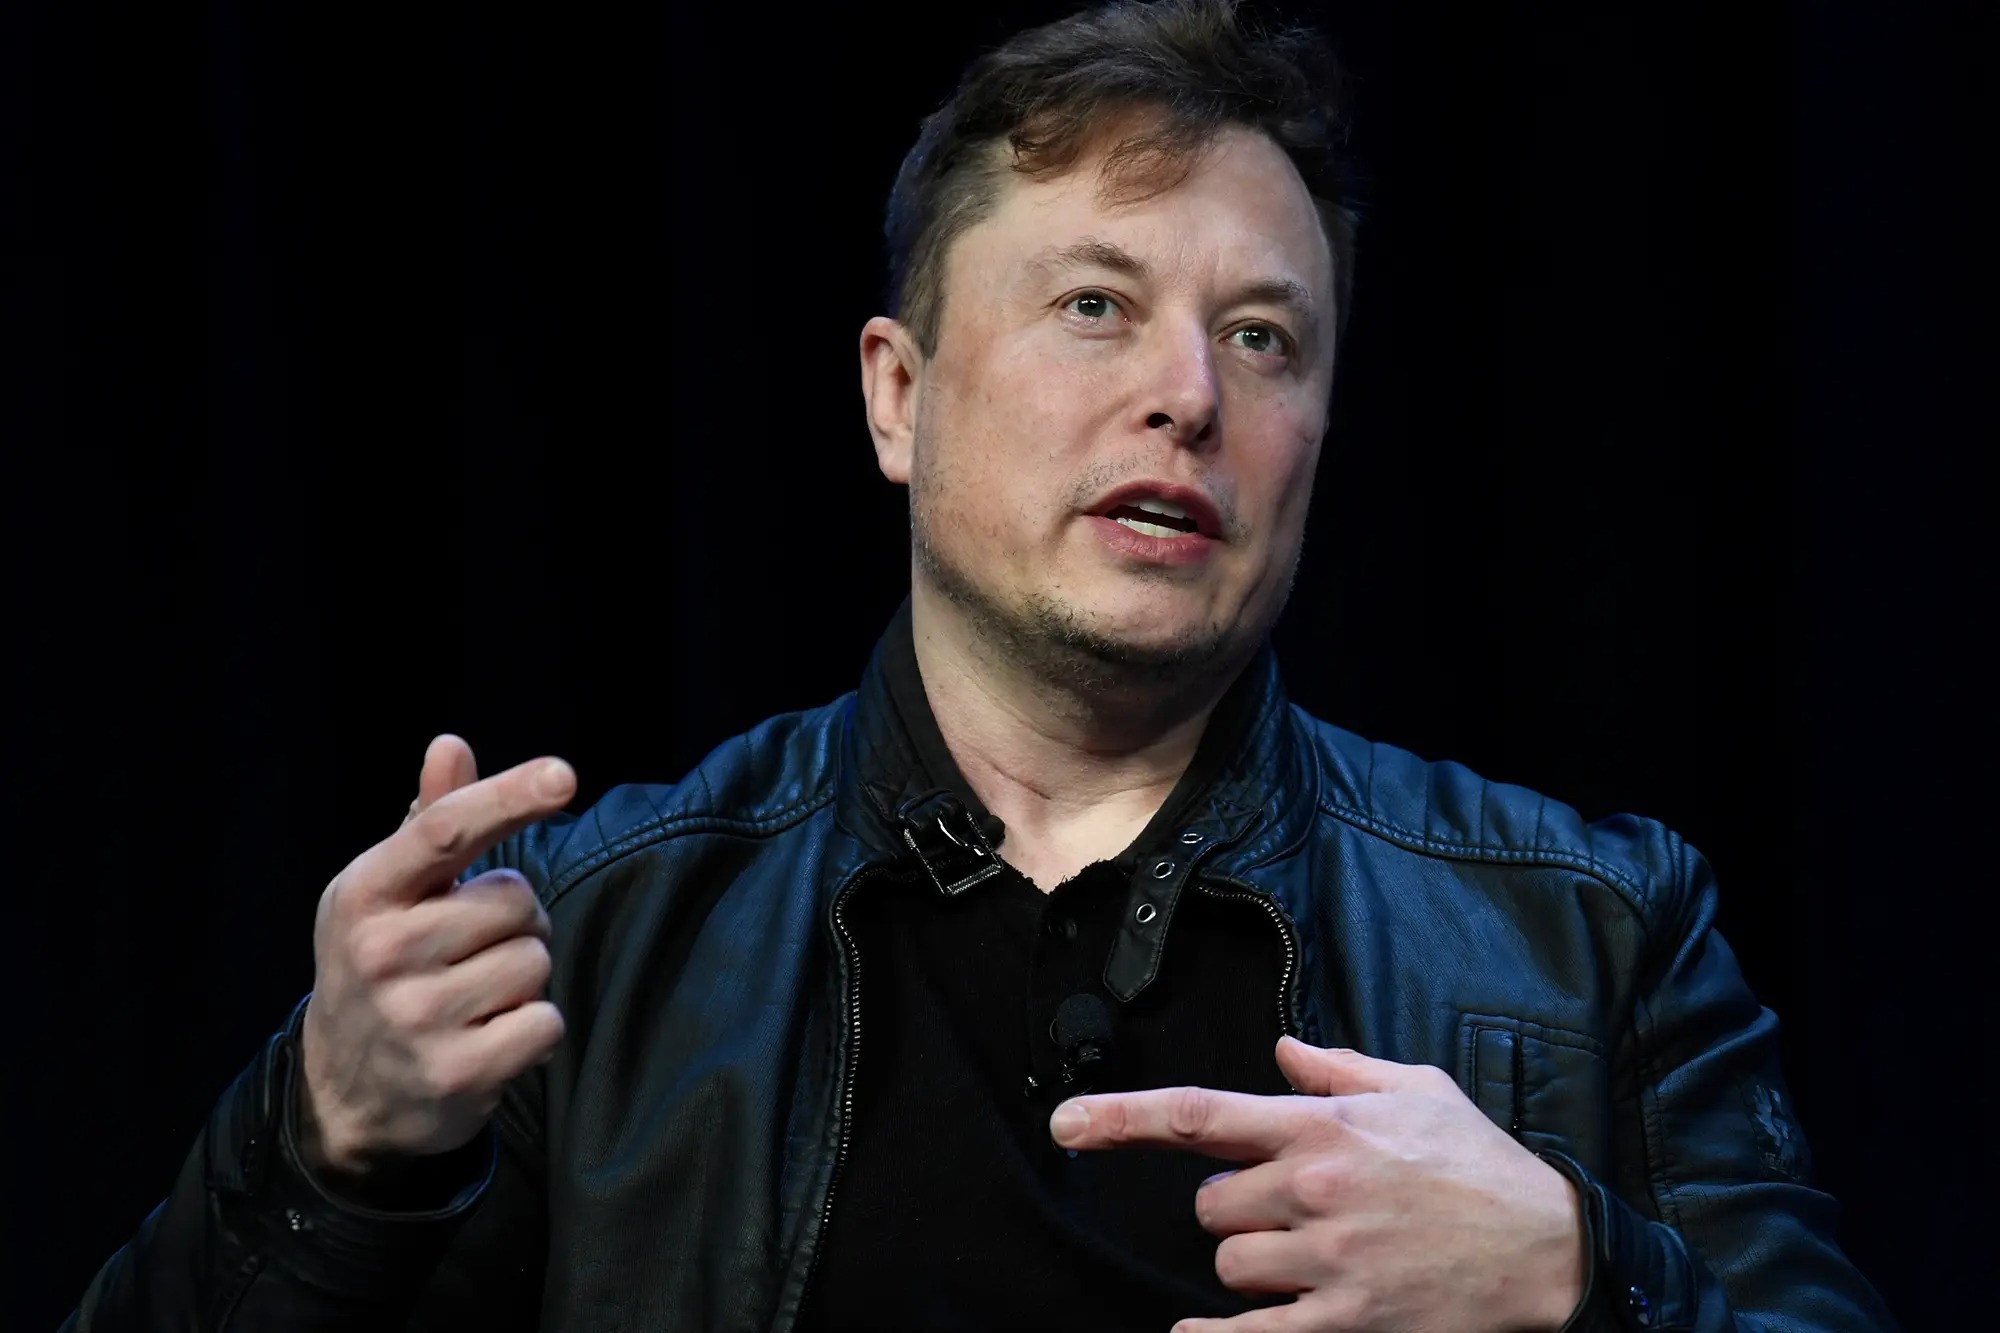 El vuelo de nueve minutos de Elon Musk en su avión privado que desata la indignación en Twitter